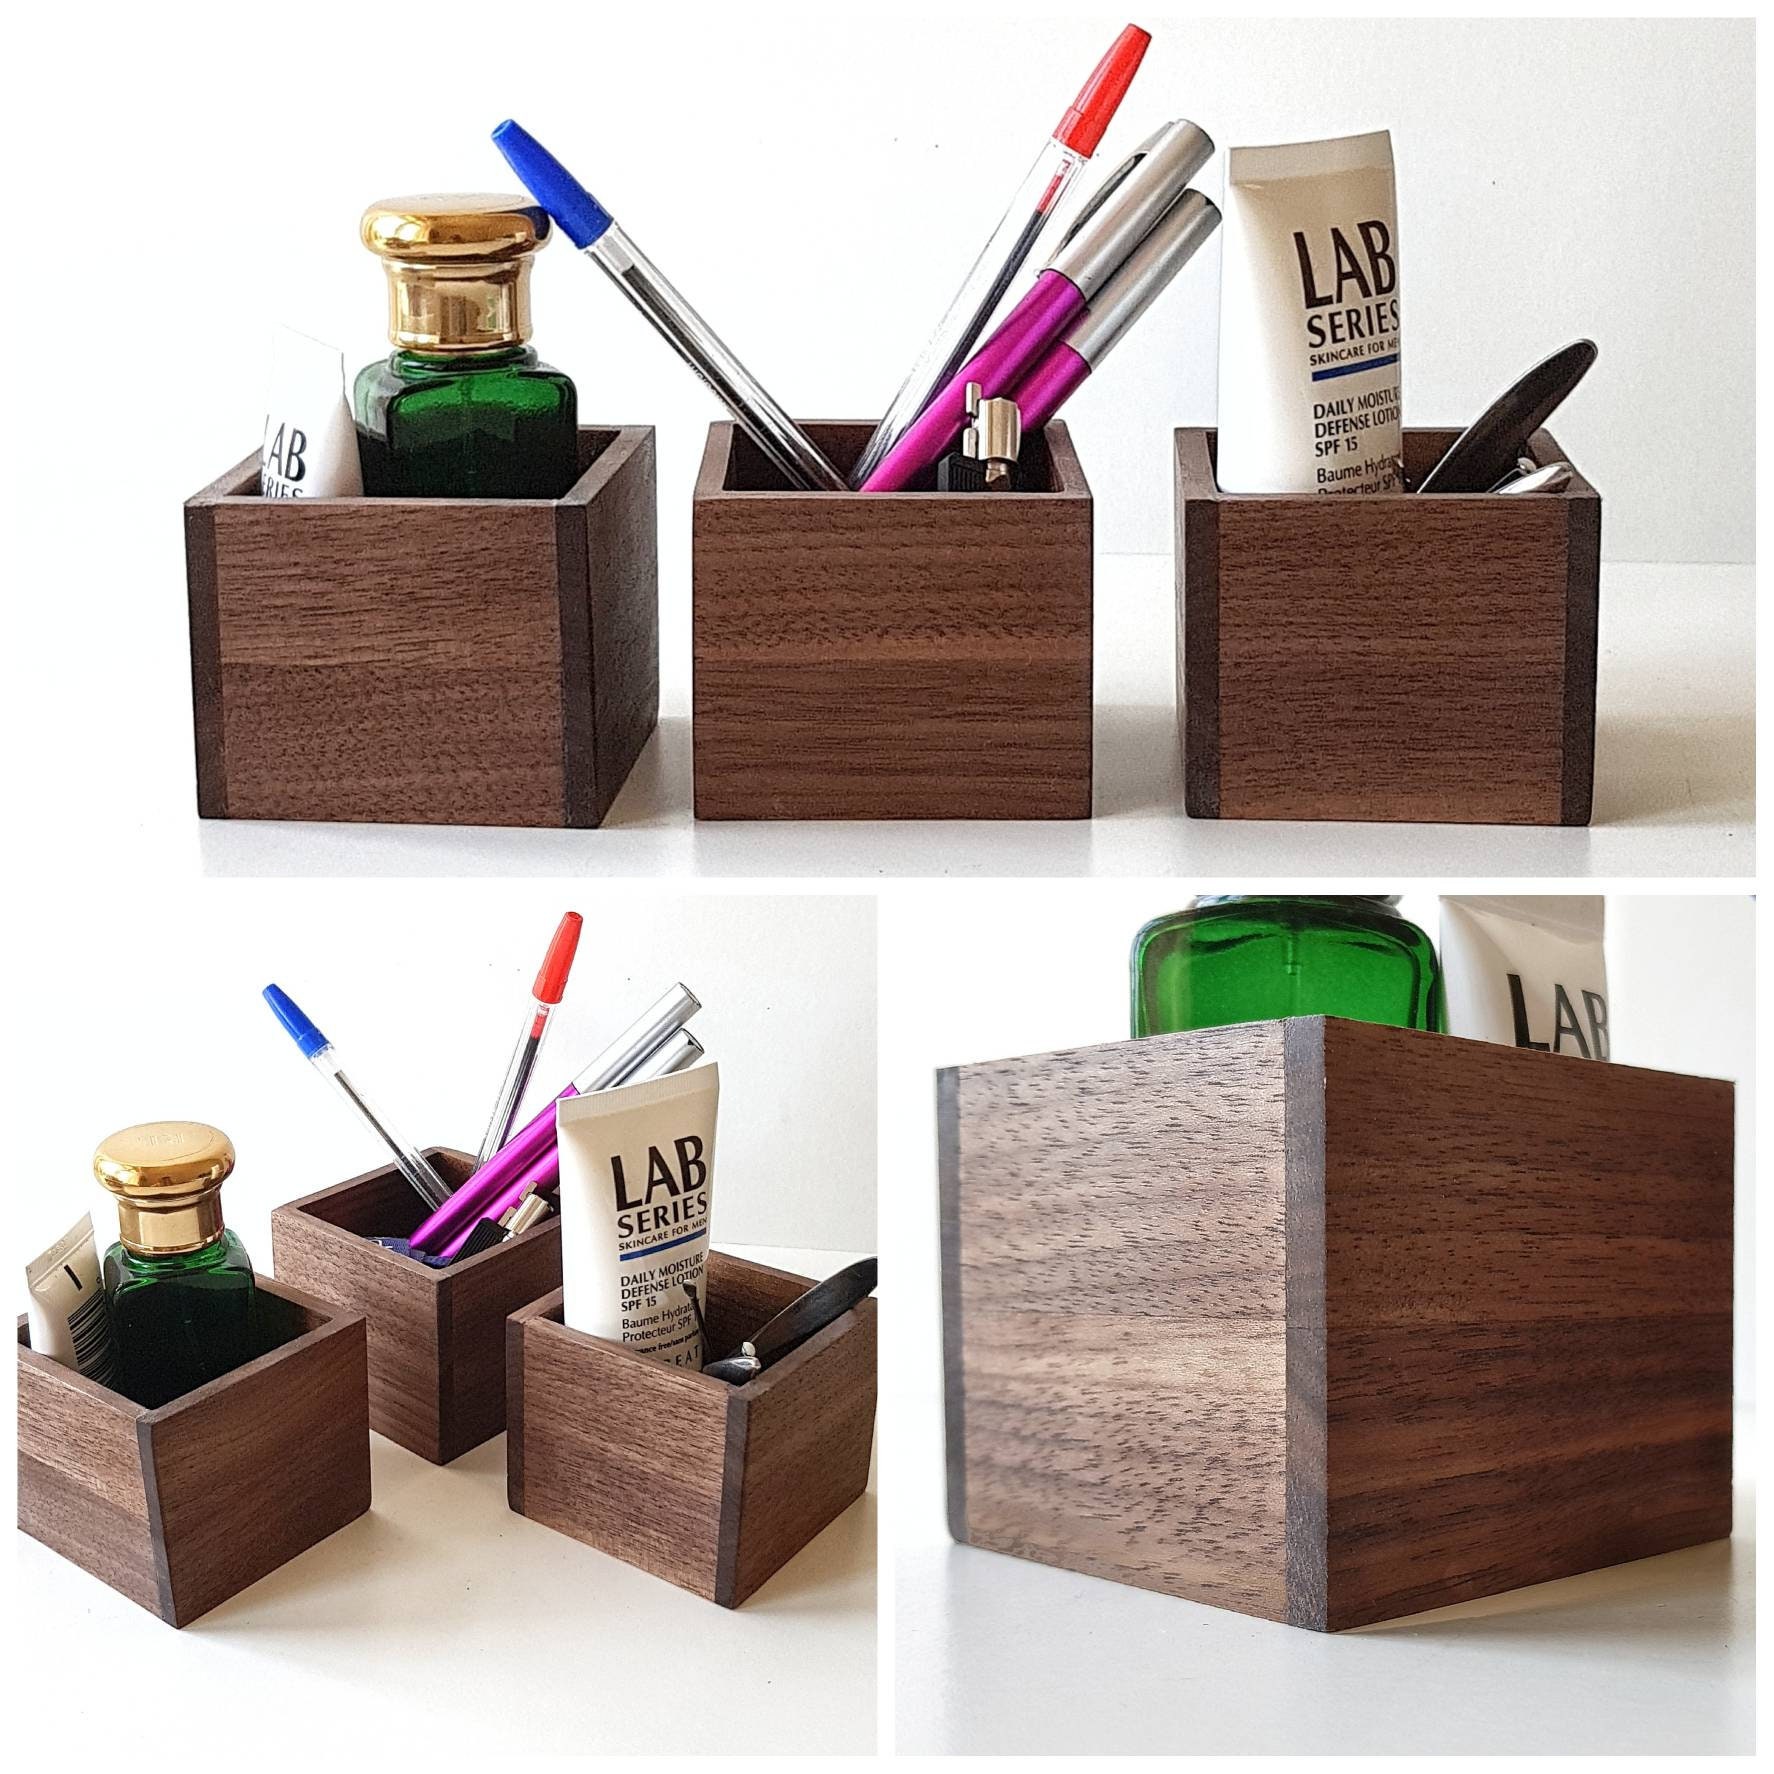 Desk pen. Wooden Desk Organizer. Multicolor Collar Plastic Pen Holders Embellished Desk Accessories. Penholder for Desk Calendar. Office Wood Pencil PNG.